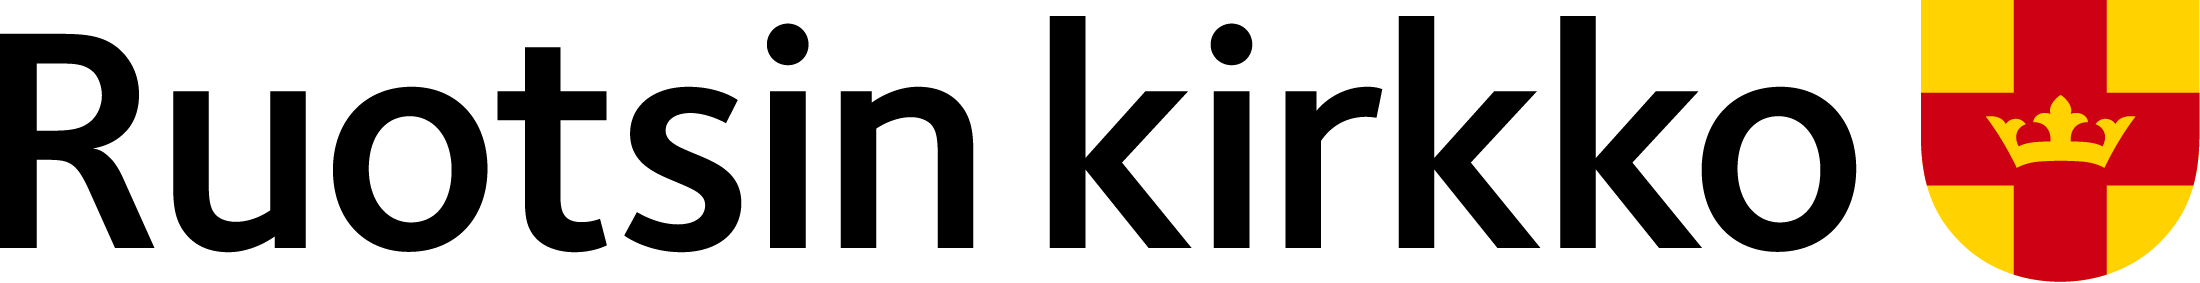 Logotyp Sverige-Finska kyrkan